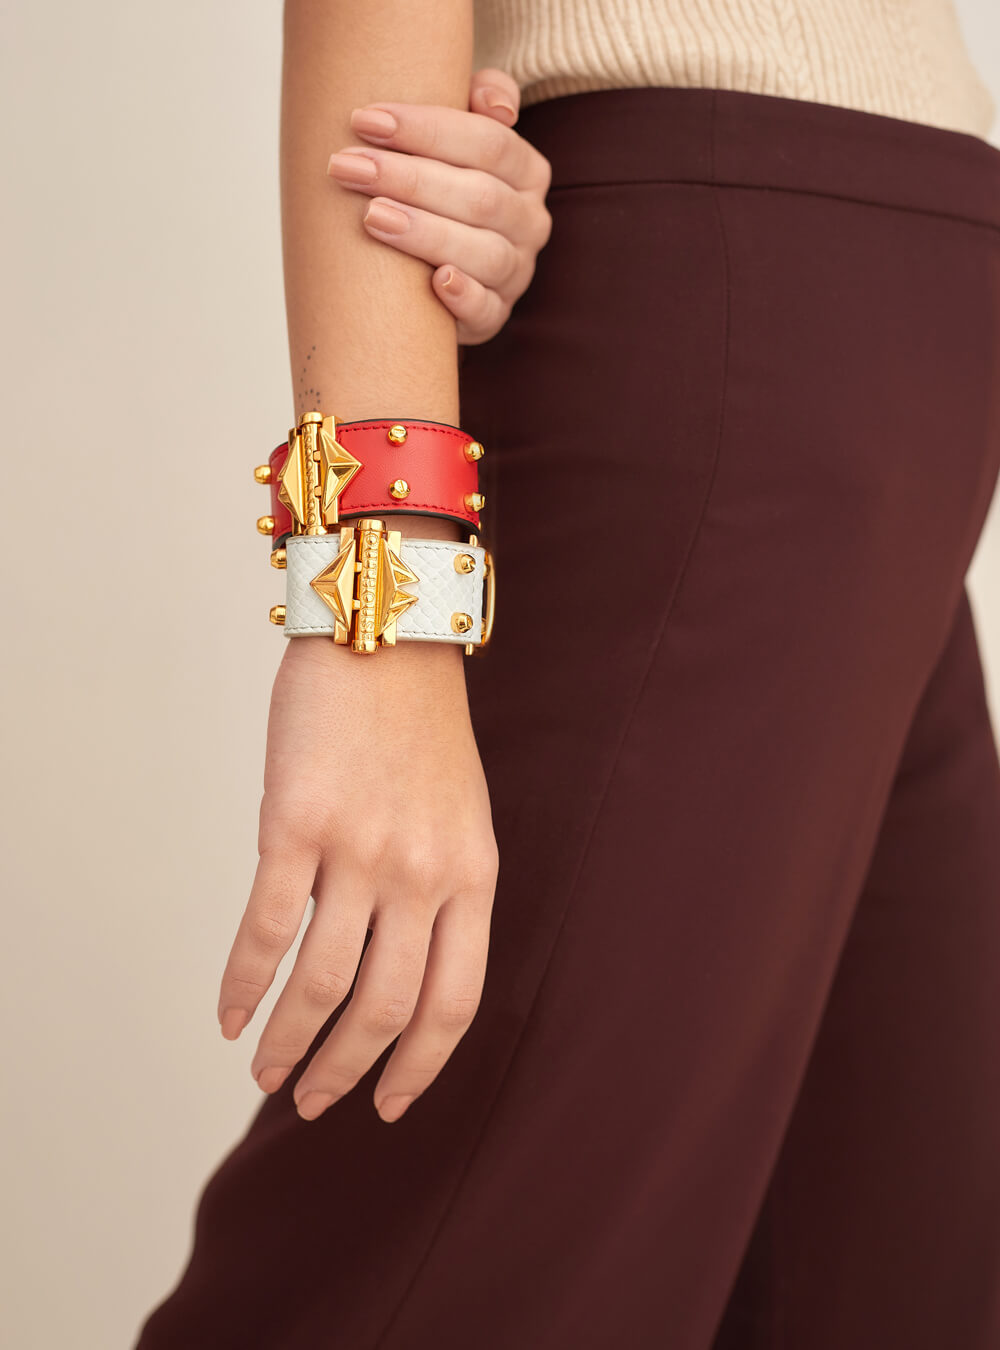 Leather Wrap Bracelets | Leather Cuff Bracelets | Women's